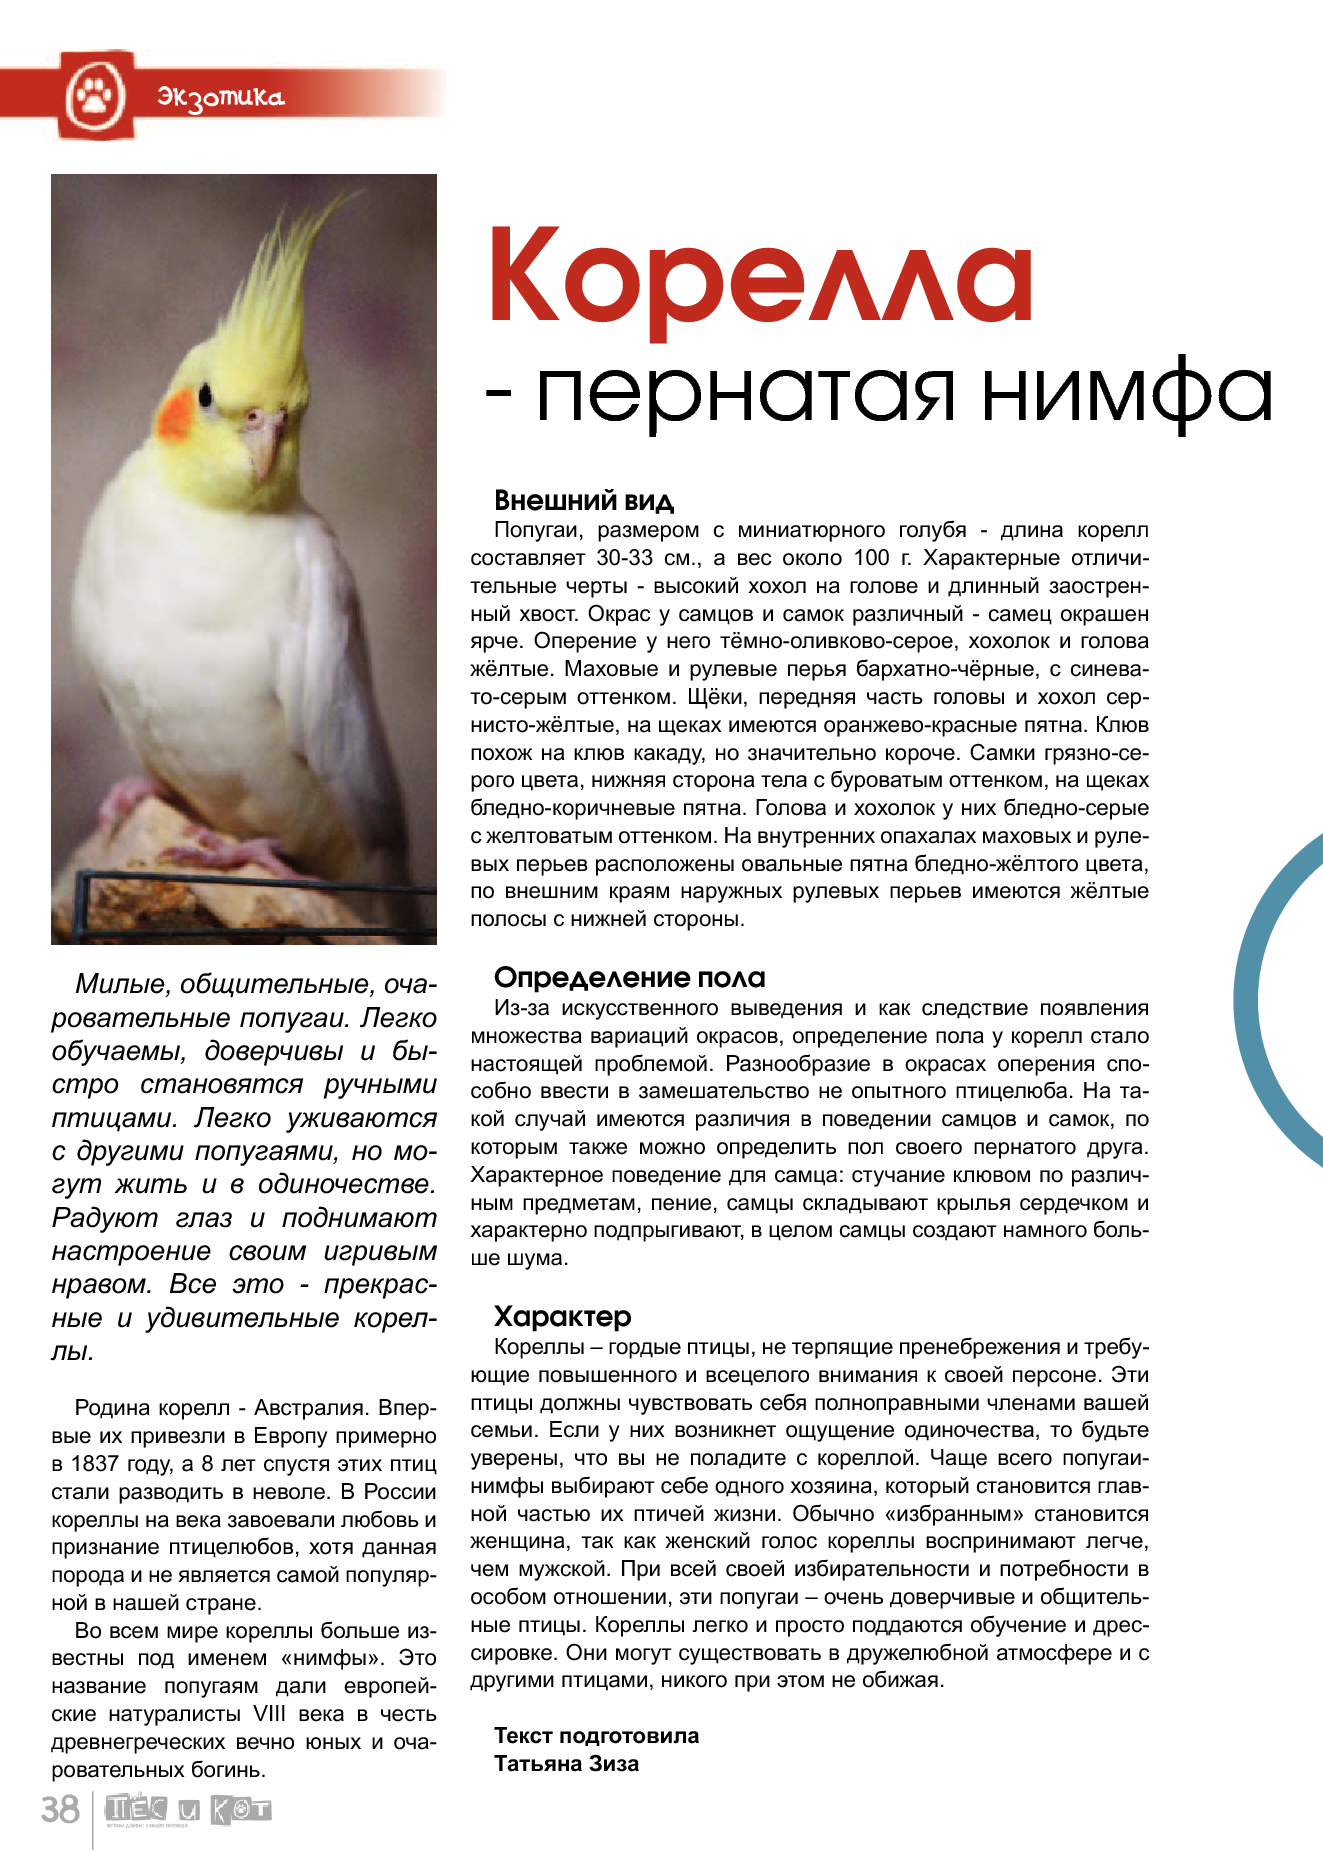 Попугай корелла: описание, внешний вид, размножение, история вида